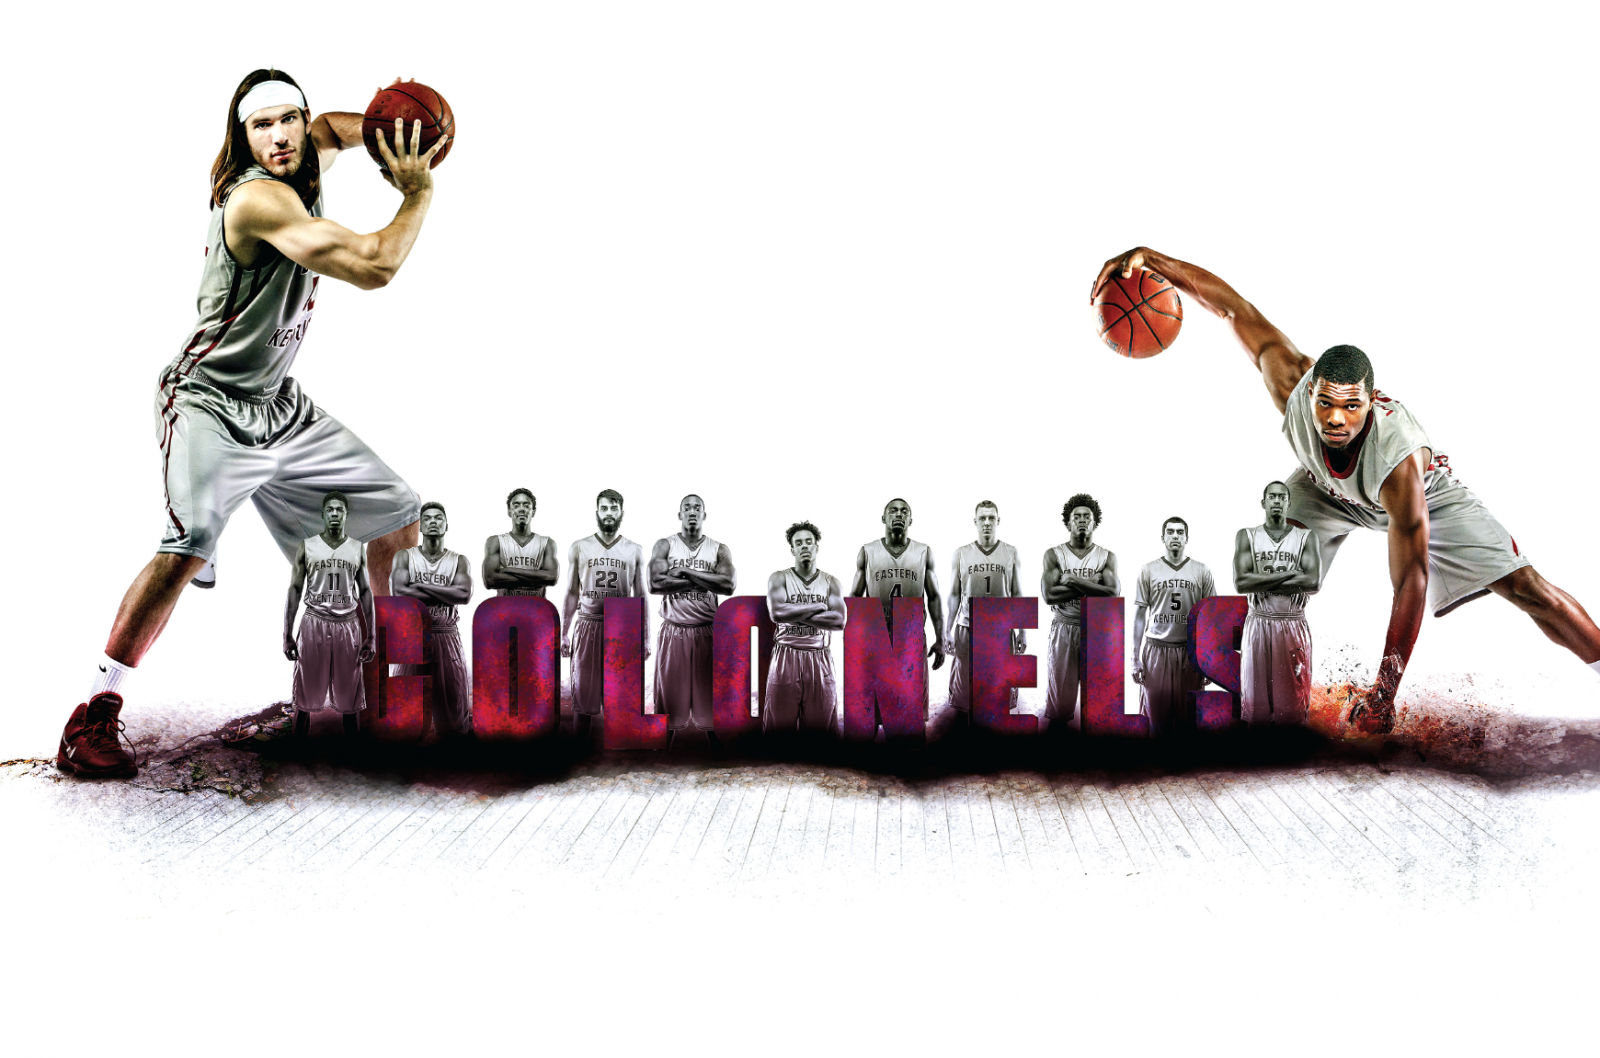 2014-15 eastern kentucky university basketball poster by adam martin